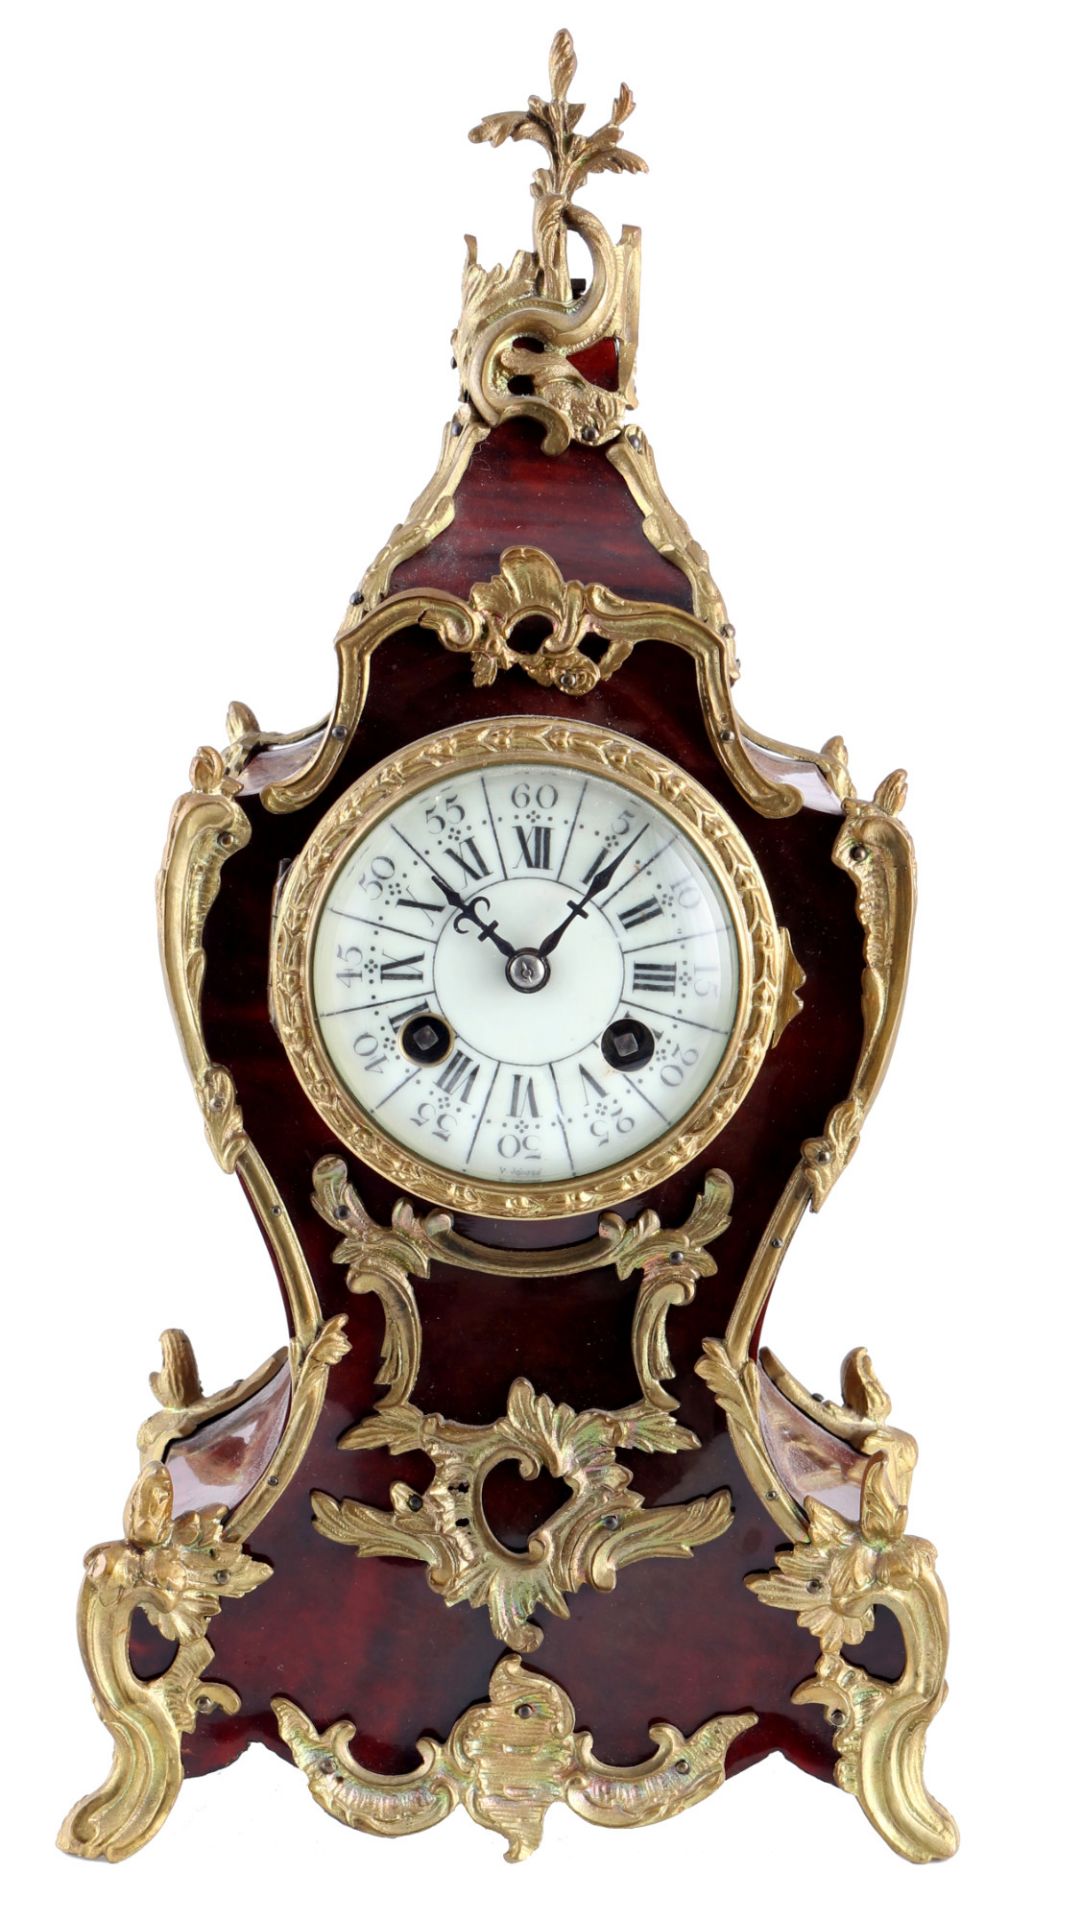 Kleine Boulleuhr/ Tischuhr, Frankreich 19. Jahrhundert, french mantel clock 19th century,